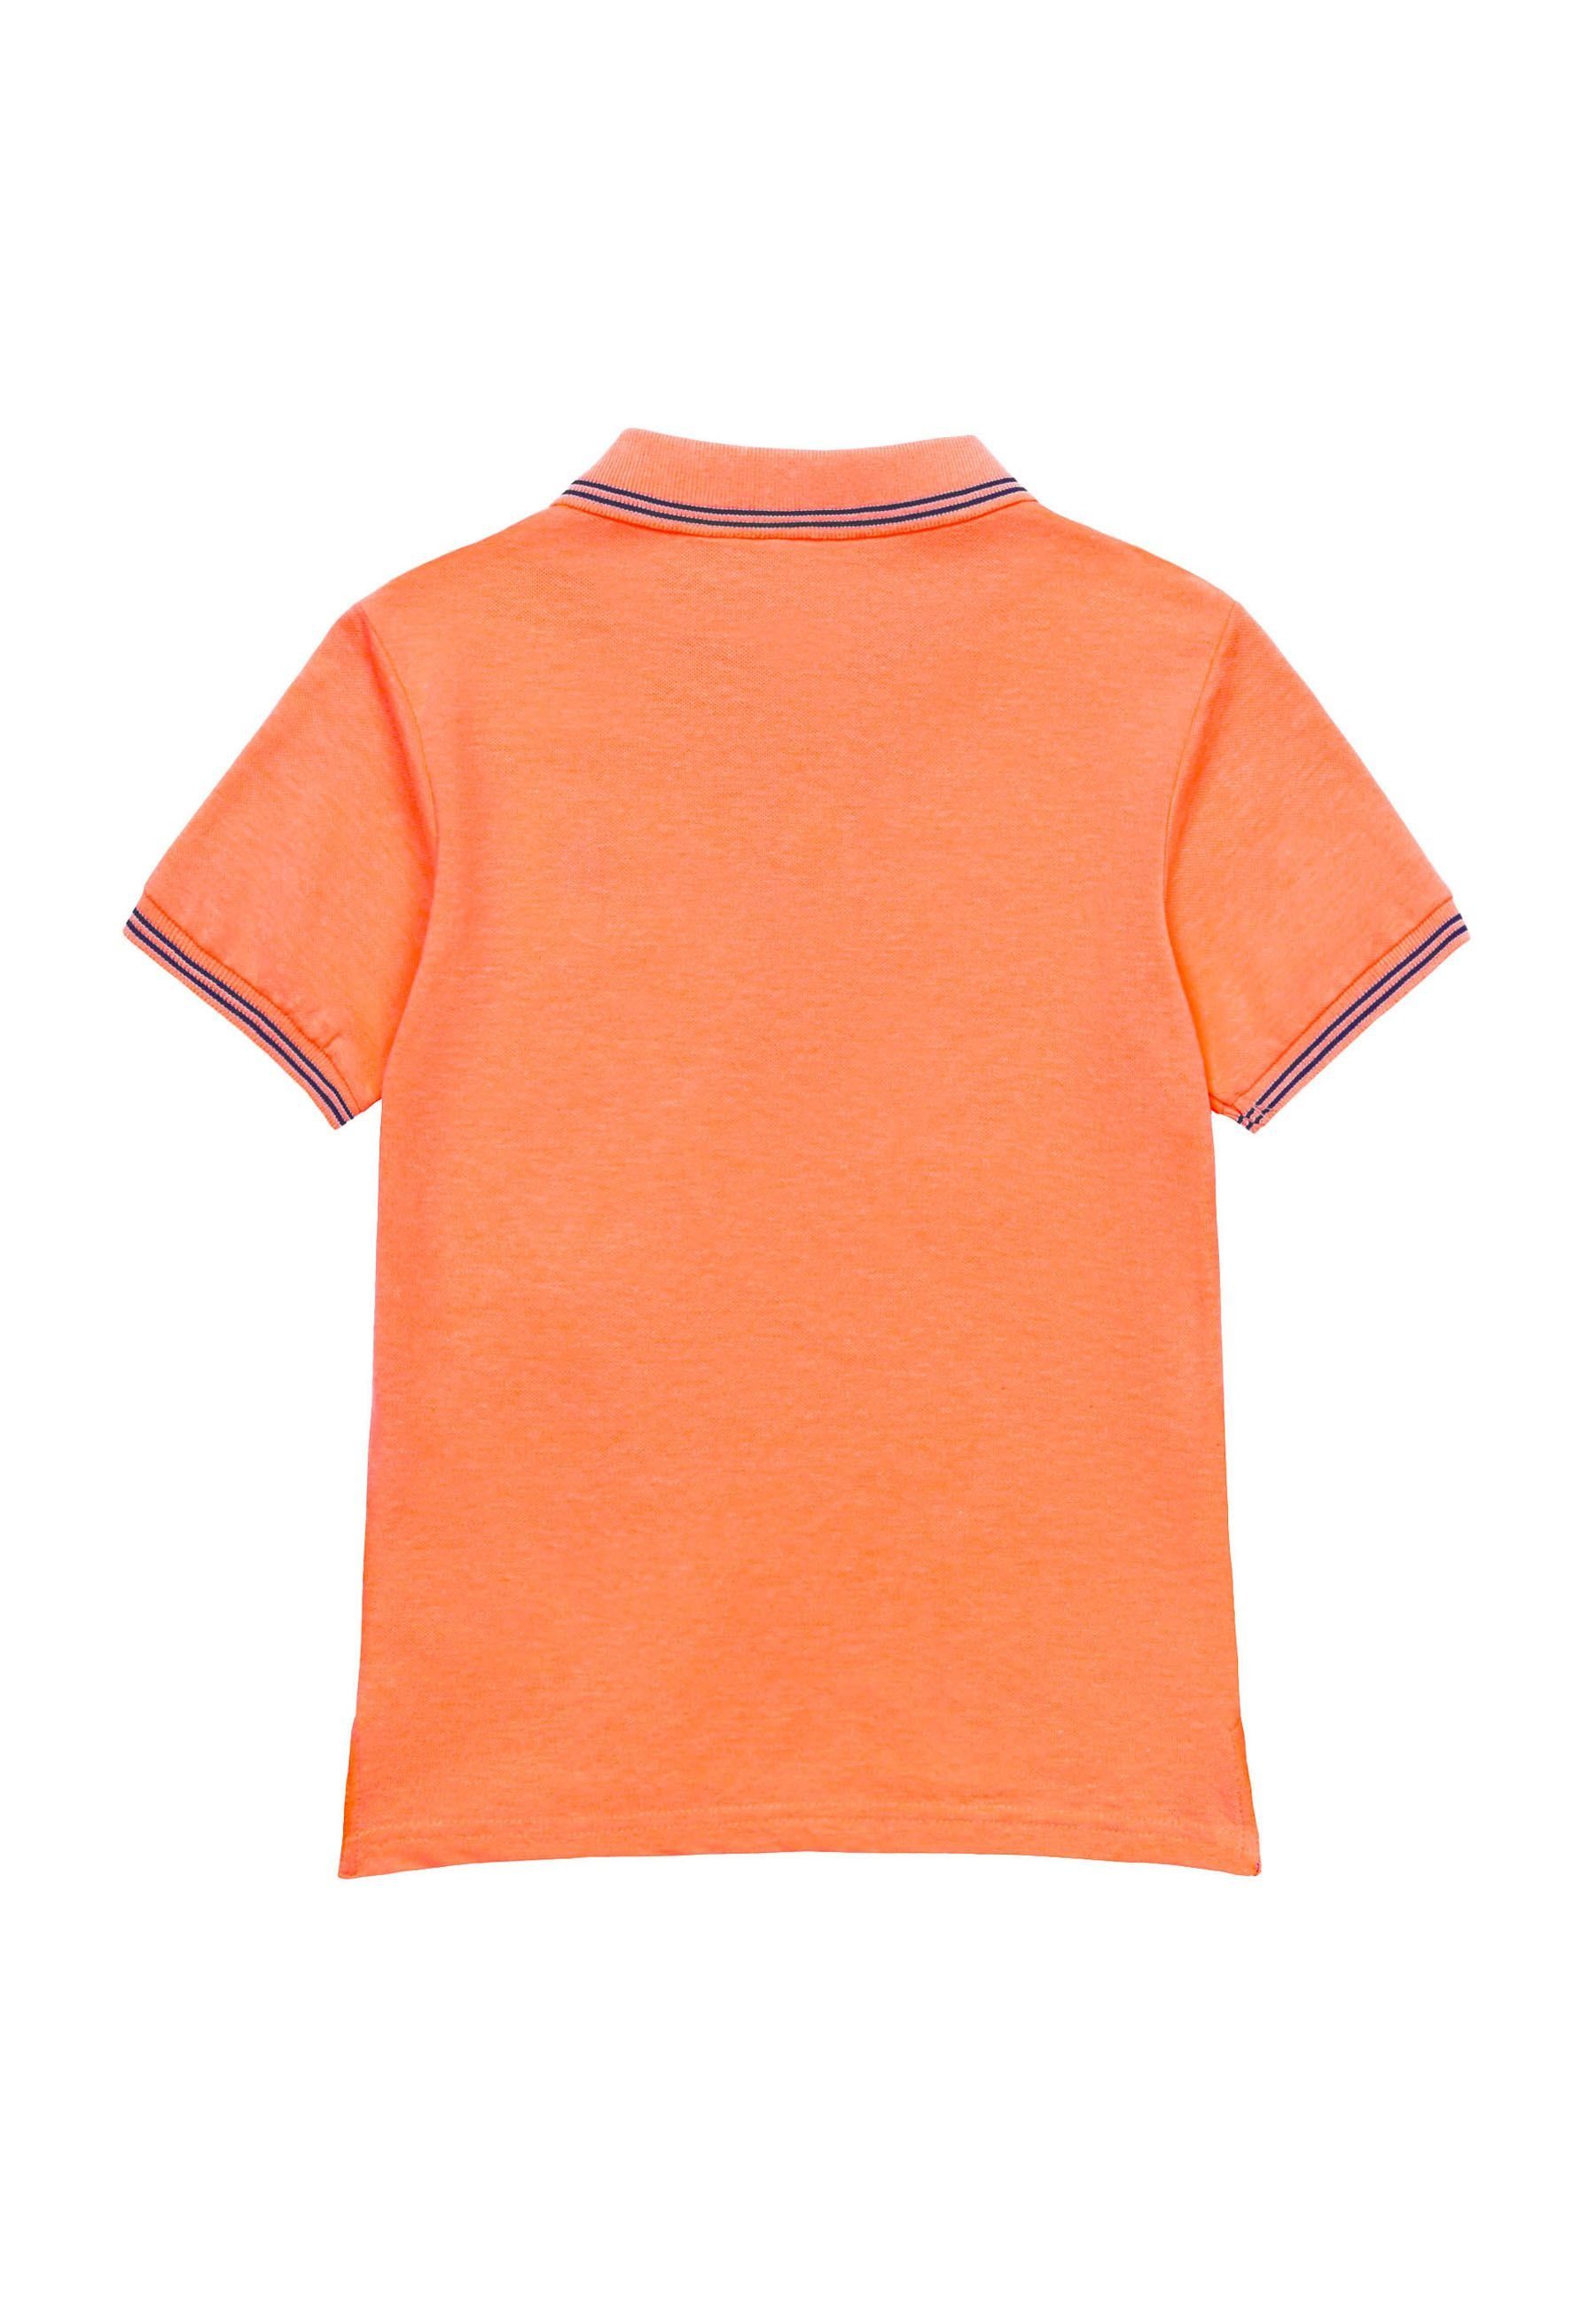 MINOTI Poloshirt Poloshirt mit Kontrastelementen Orange (1y-14y)